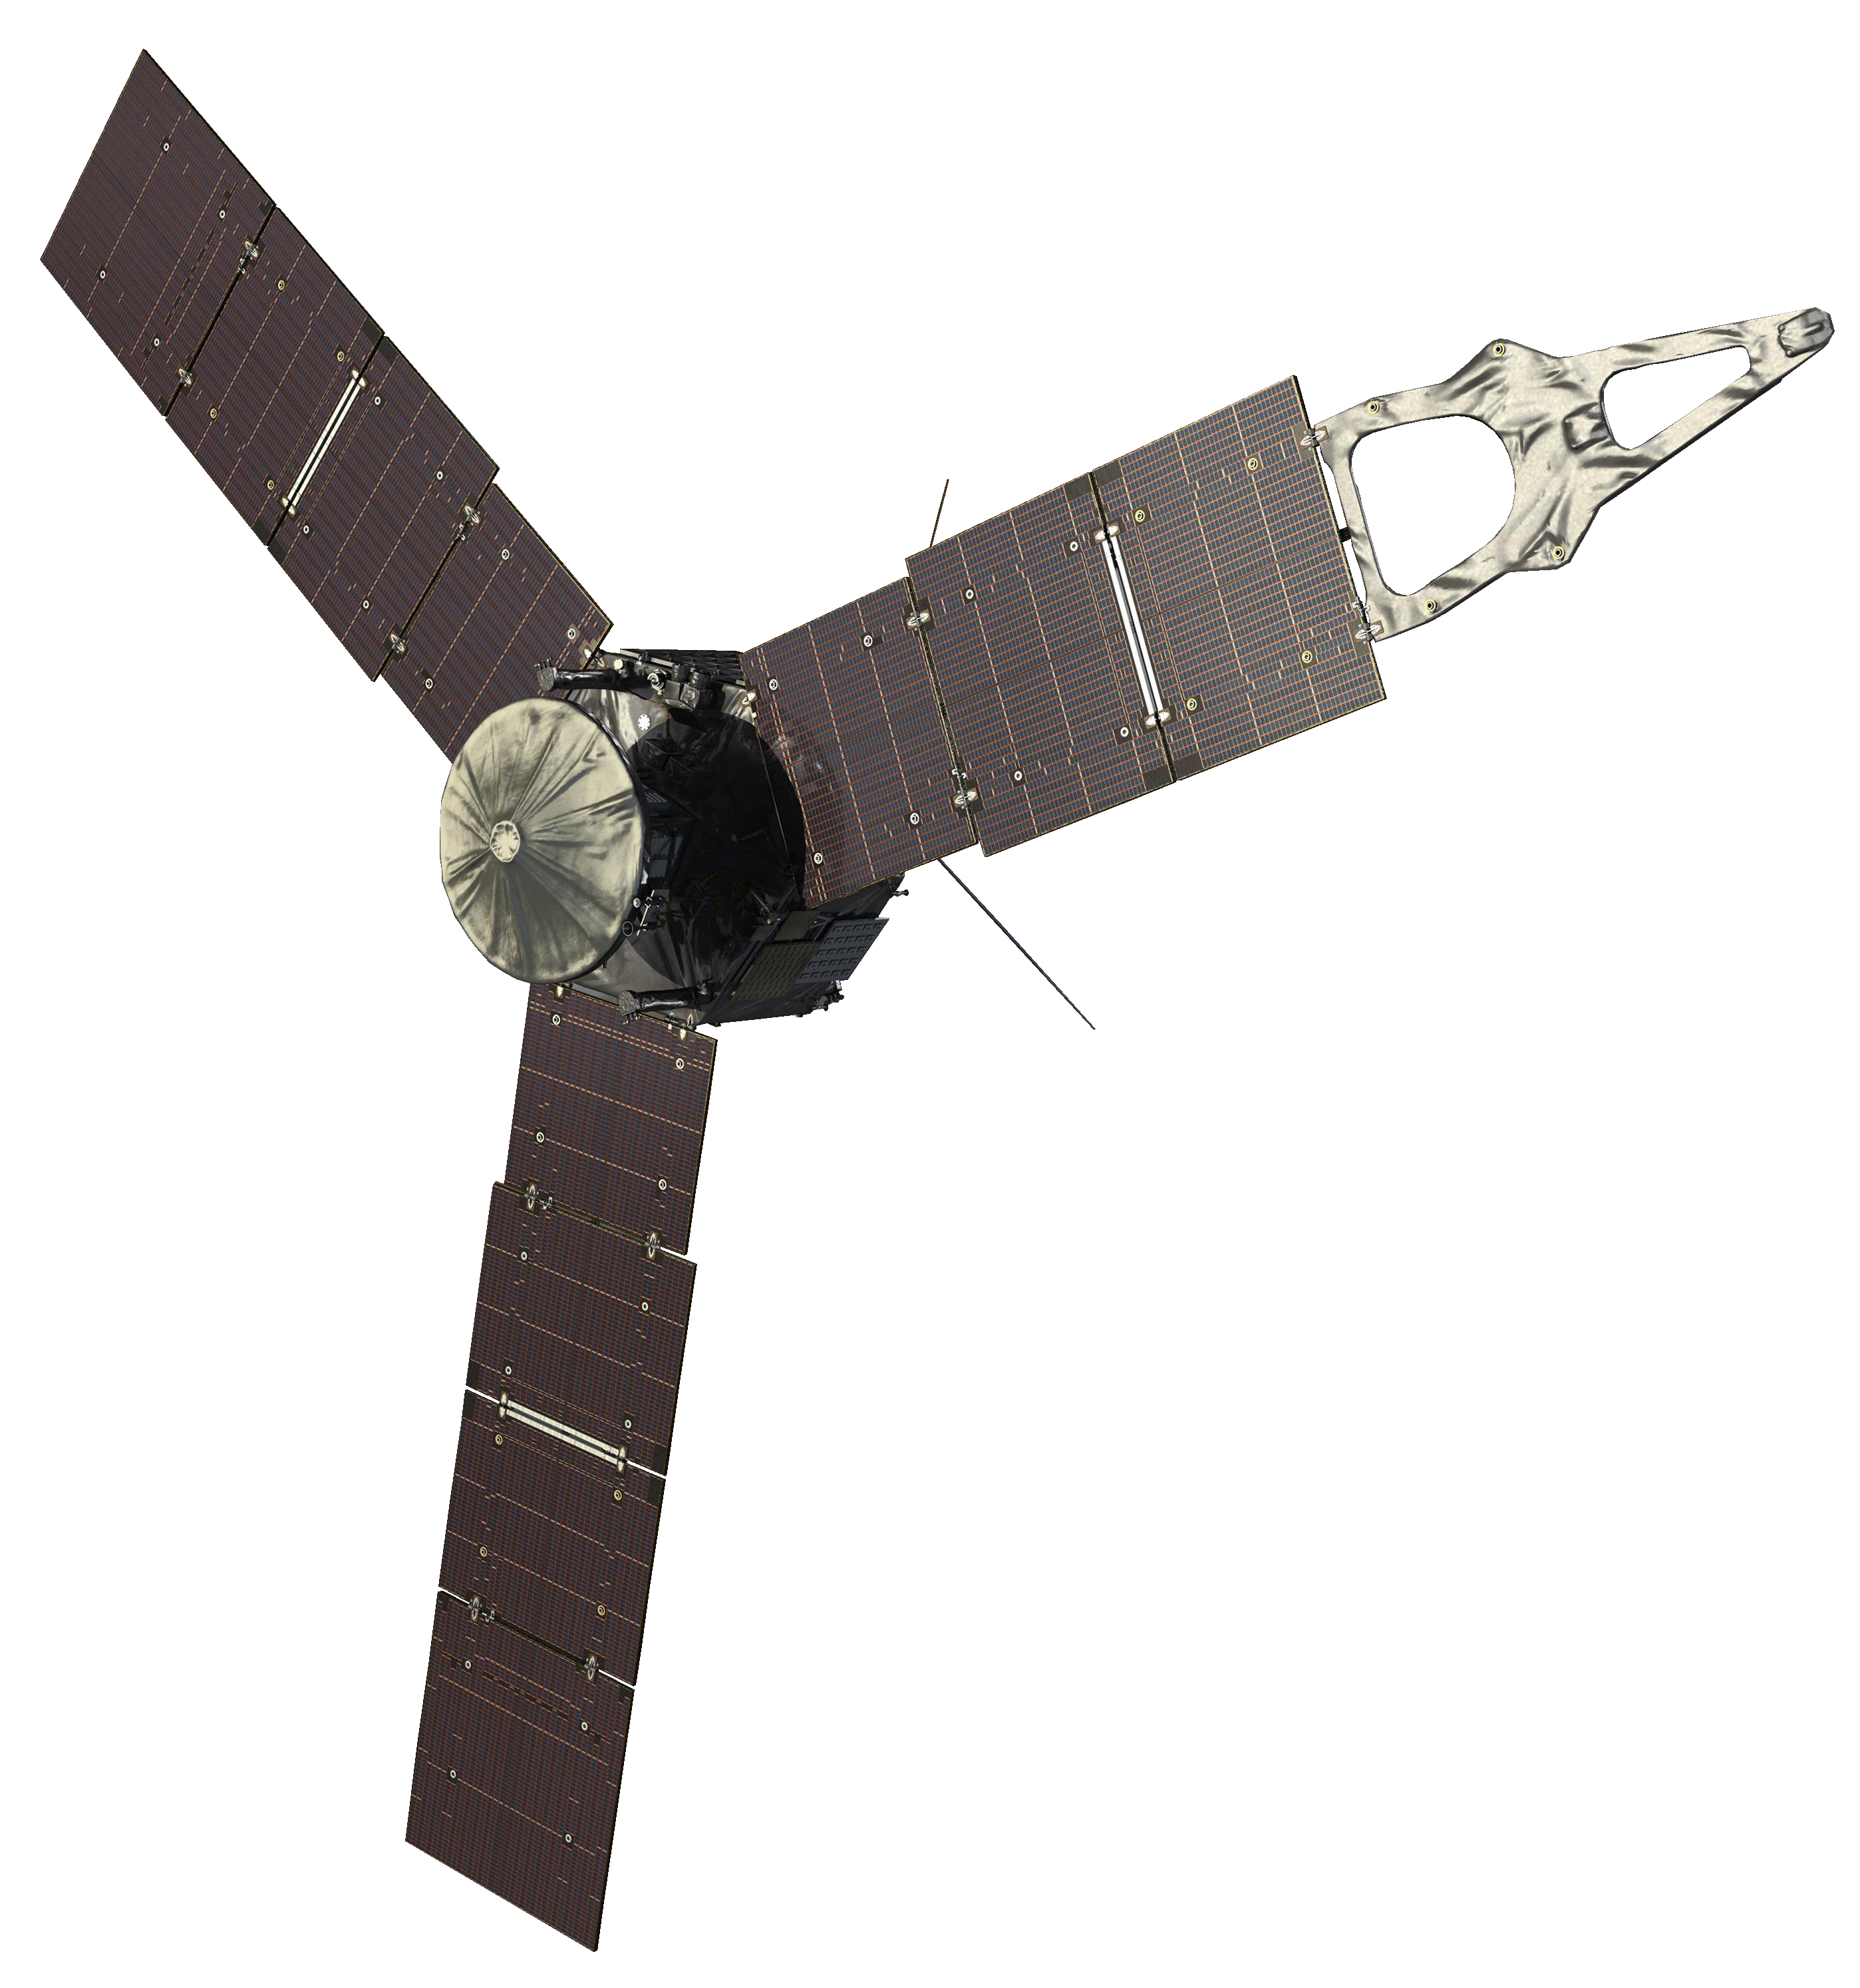 Artist's rendering of the Juno spacecraft